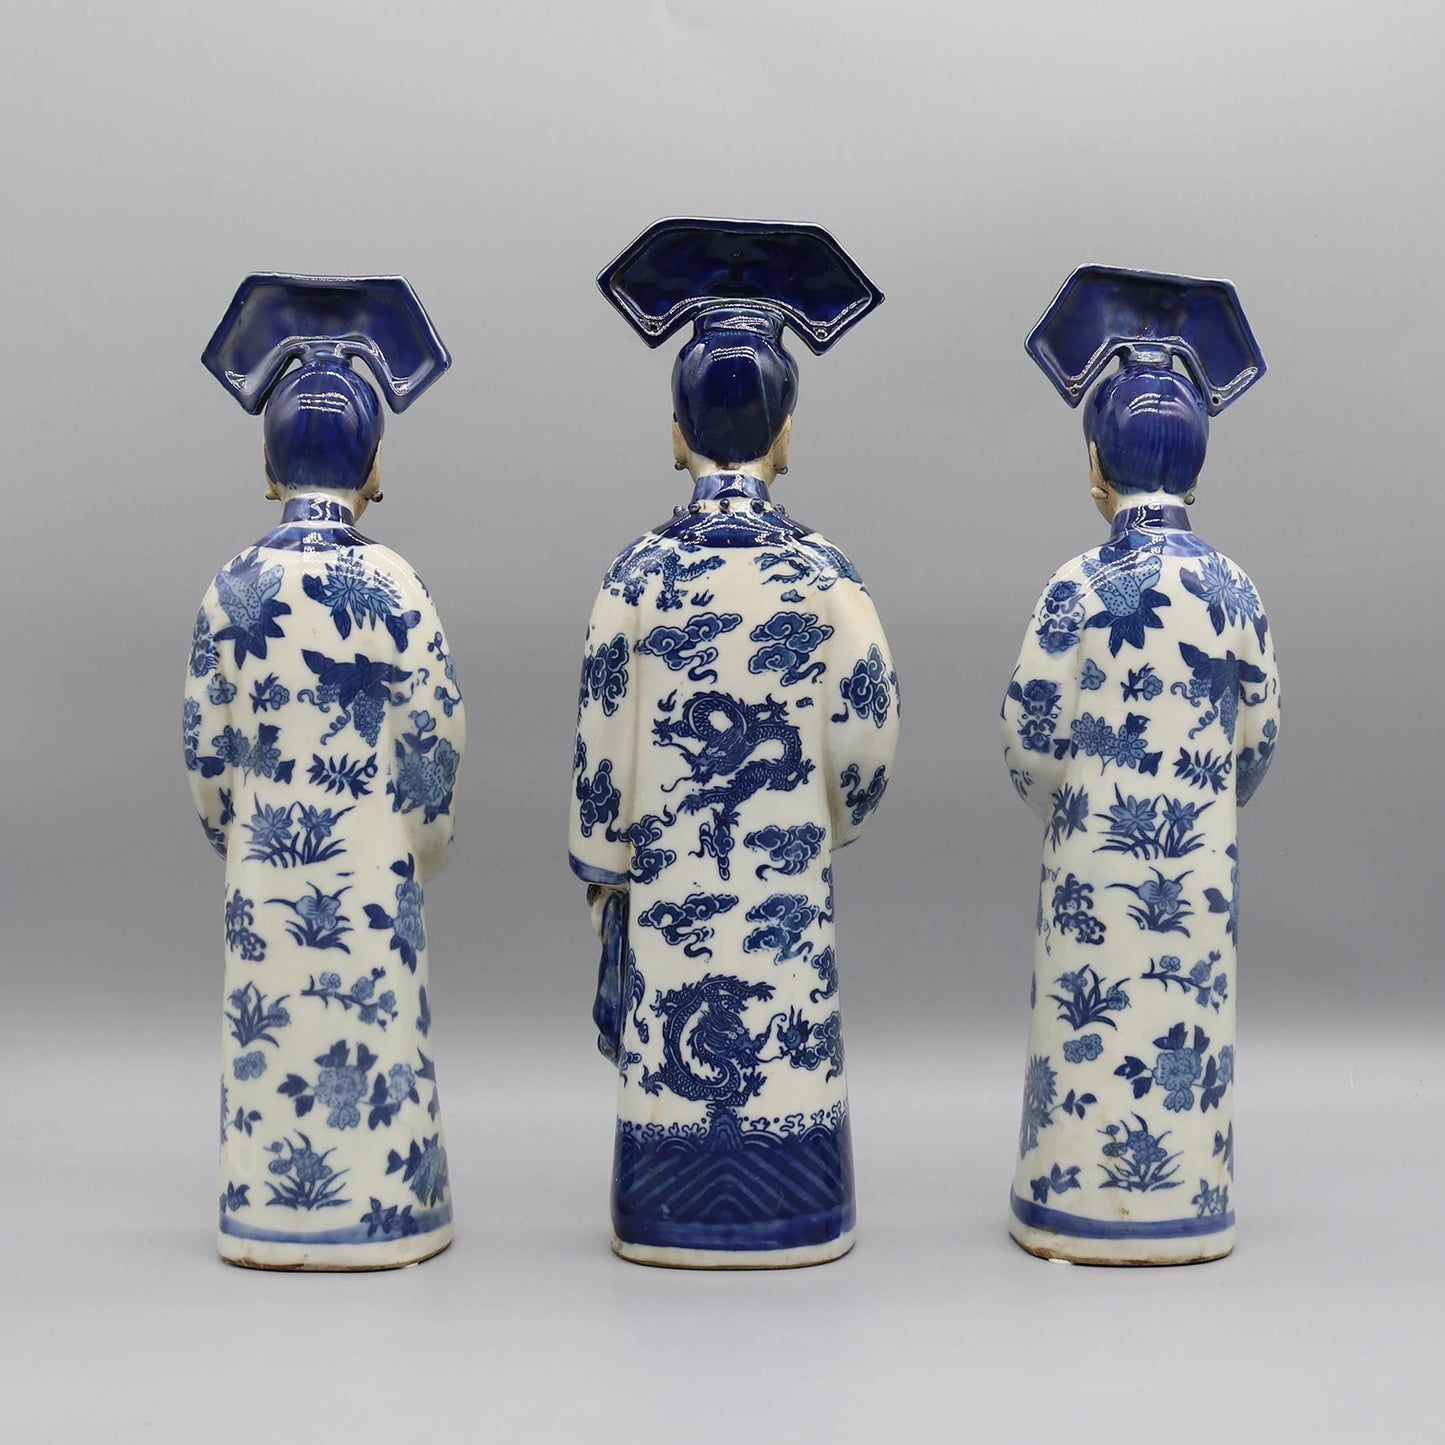 Figurines en céramique des princesses et impératrices chinoises de la dynastie Qing, statue en porcelaine, ancienne dame chinoise, décoration de la maison 